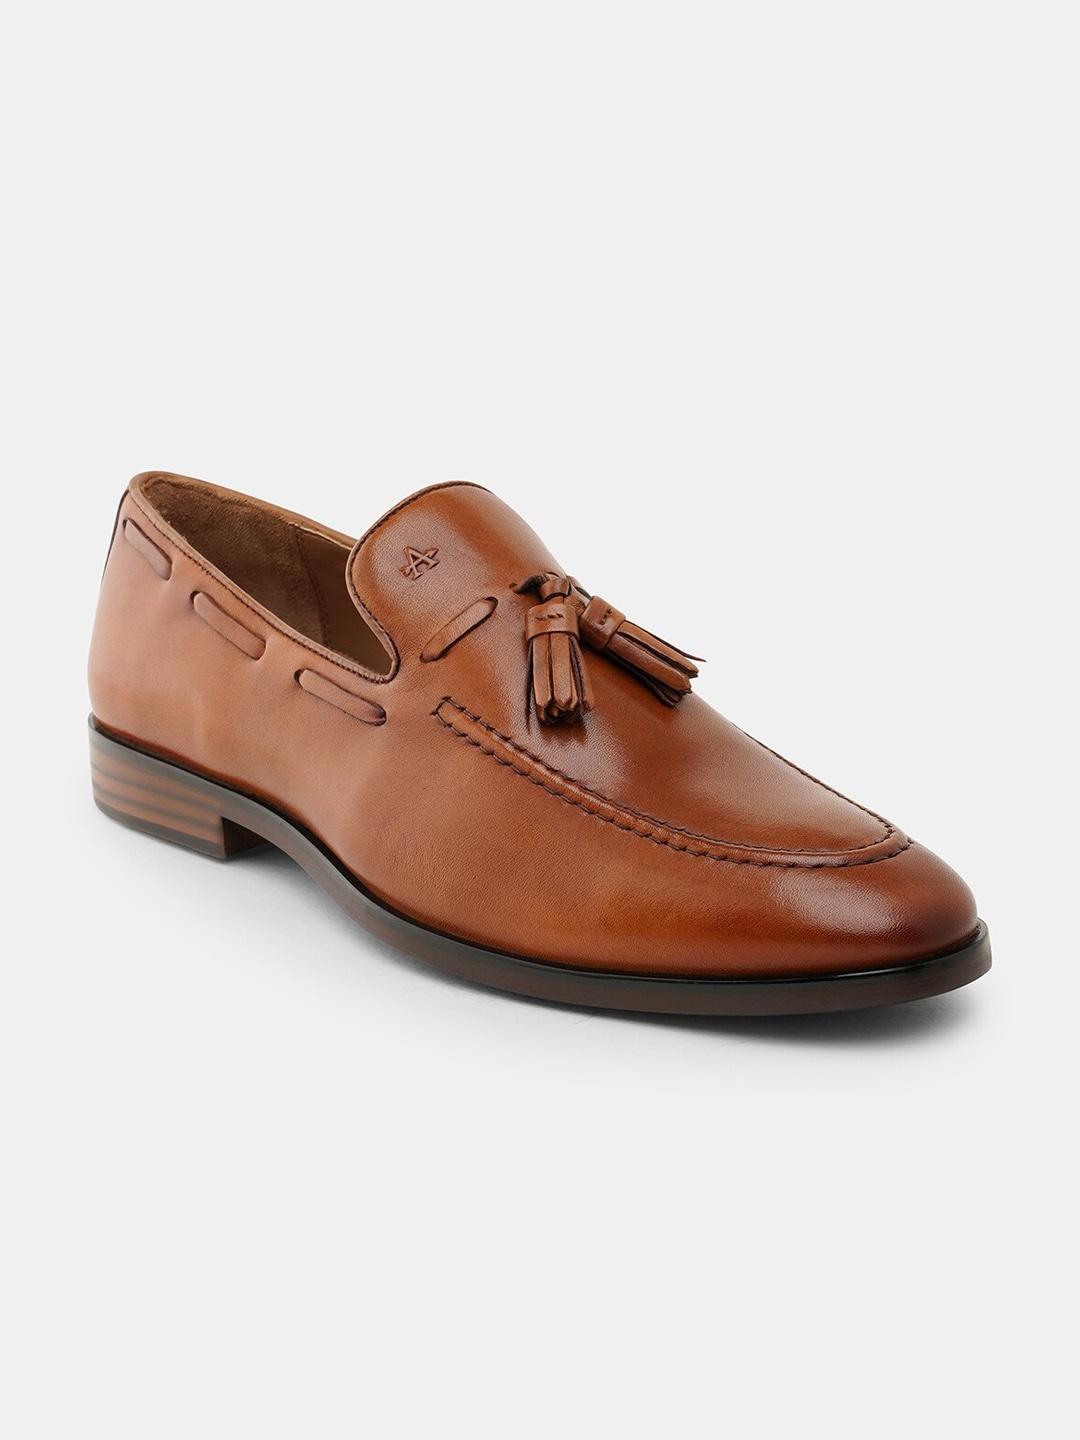 Arrow Men Leather Tassel Formal Loafers